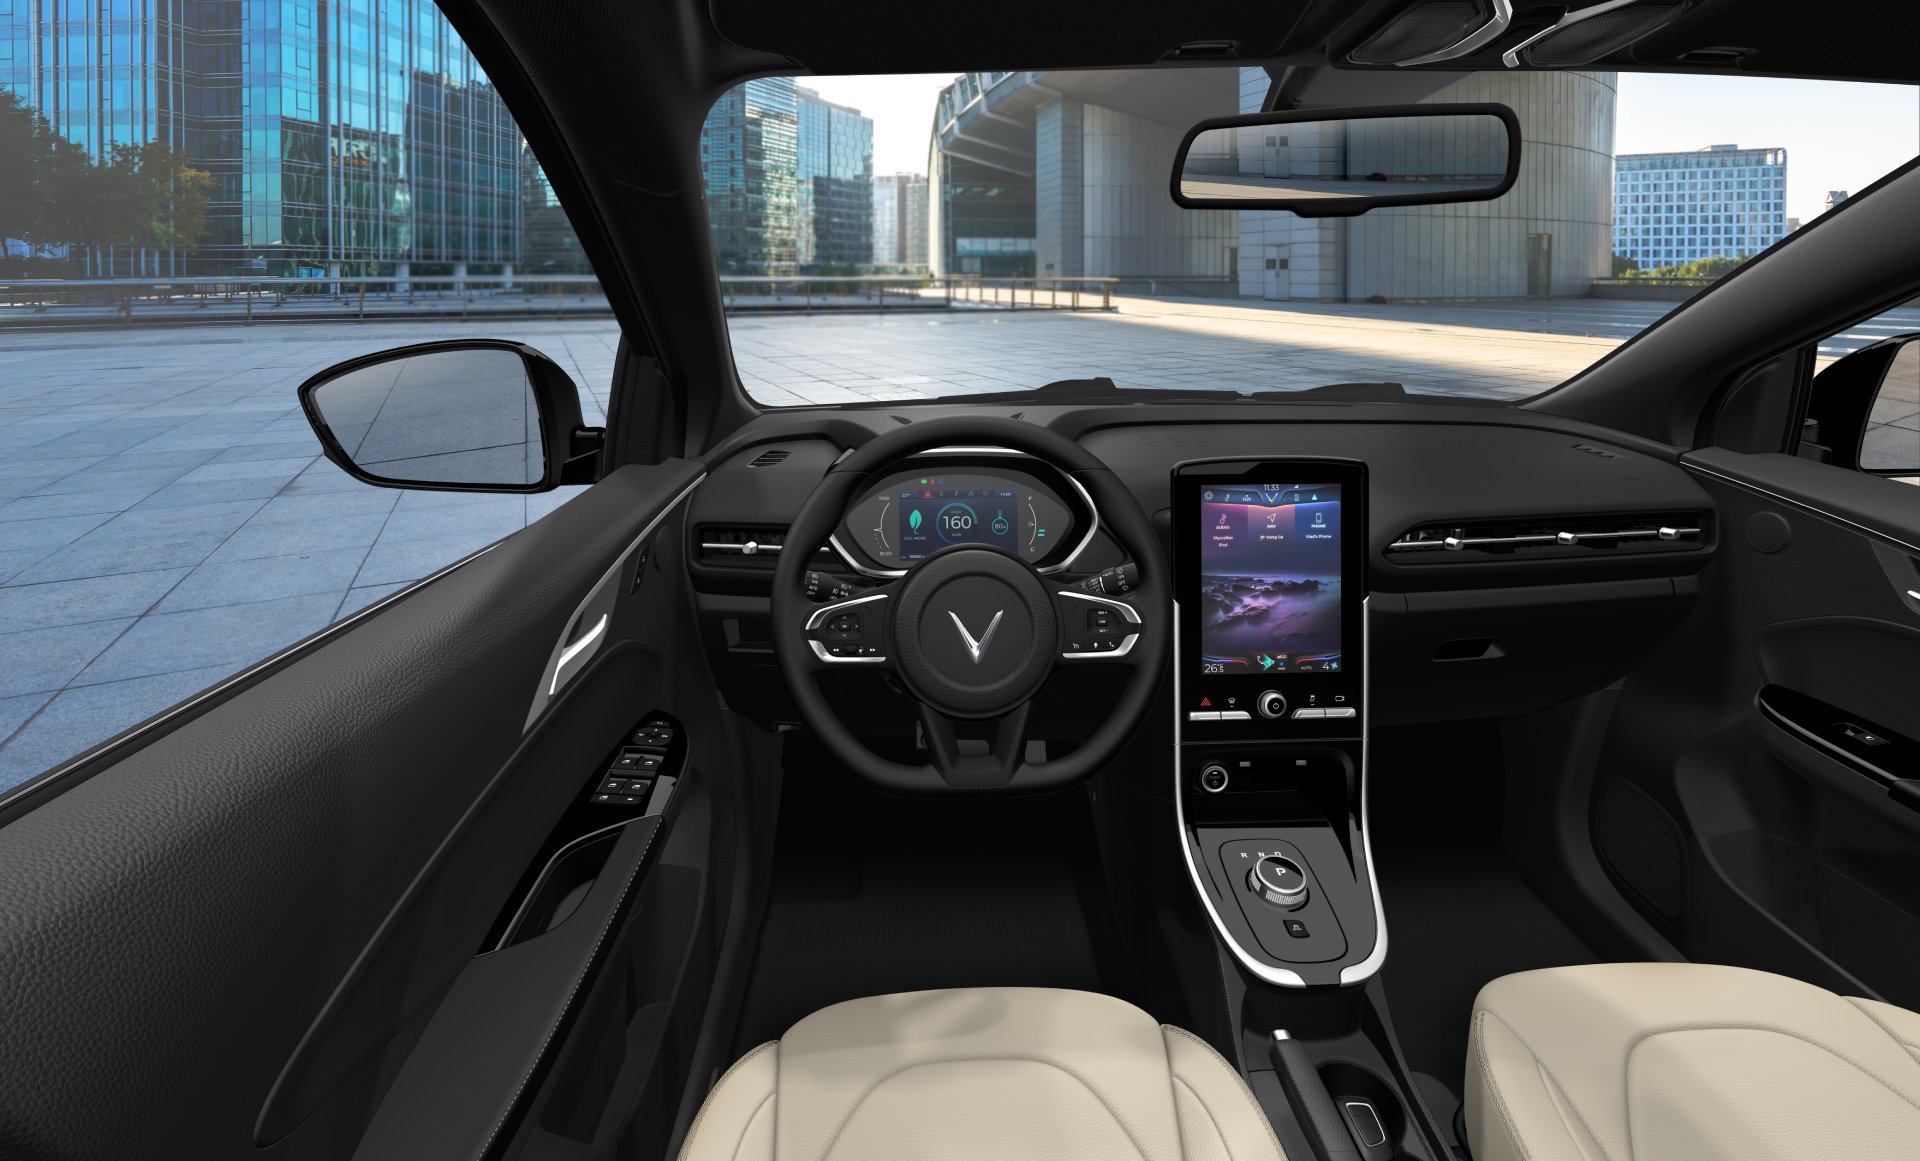 Thế giới Xe - Tiết lộ loạt công nghệ thông minh vượt trội trên ô tô điện VF e34 (Hình 3).